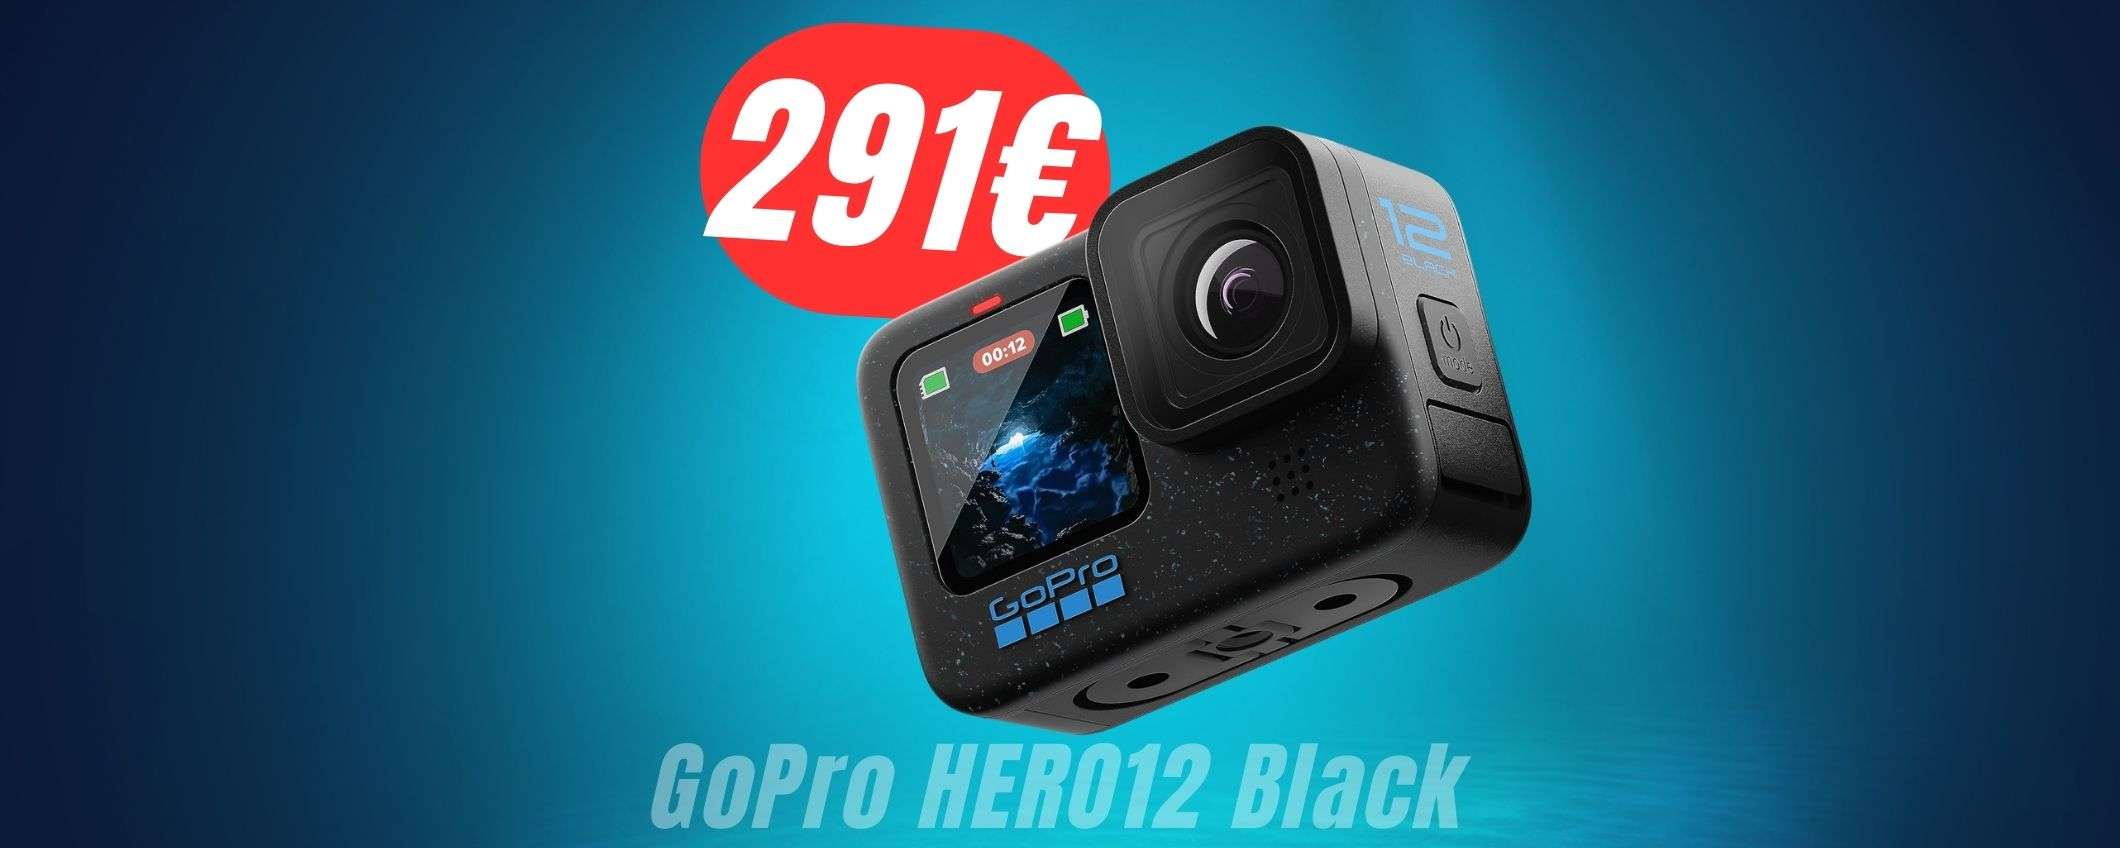 GoPro HERO12 Black è SCONTATA di 158€ su Amazon!